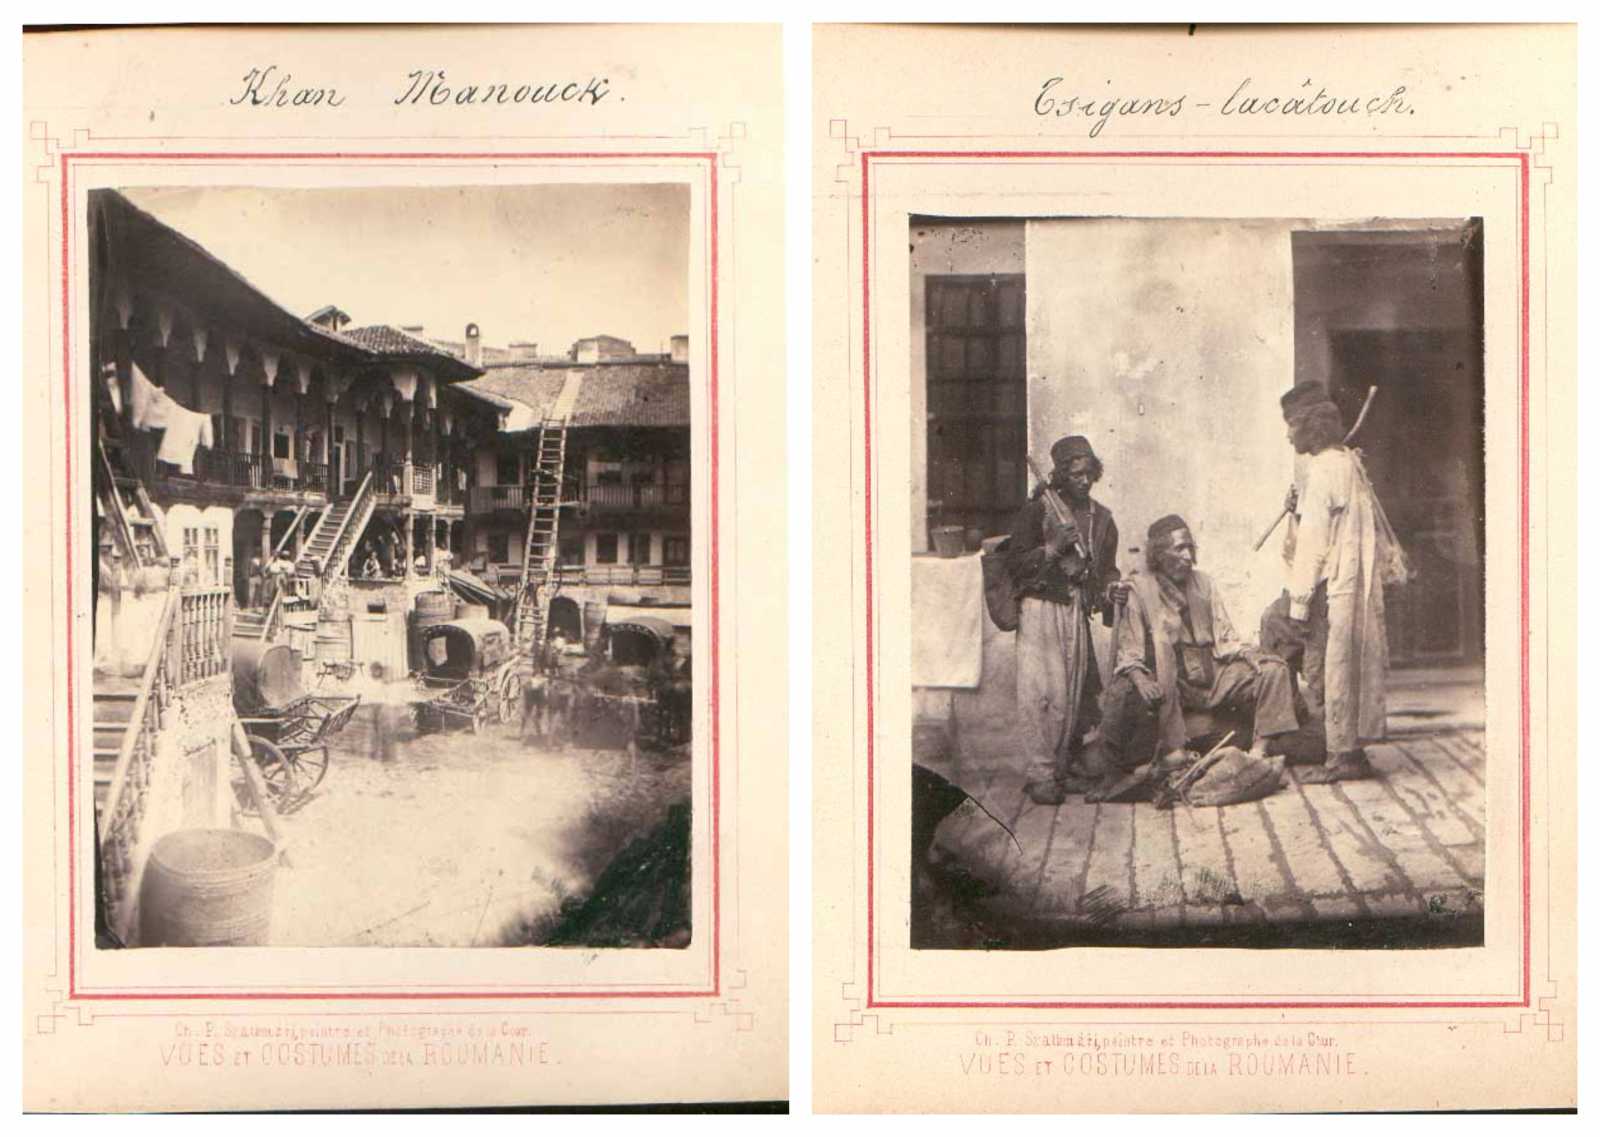 Manuc fogadója és lakatos cigányok. Fényképek az Elena Cuzának összeállított Románia-albumból, 1860 körül. Mérete: 115 x 95 mm. Forrás: Román Akadémia könyvtára / FI 66288 / FI 66293.